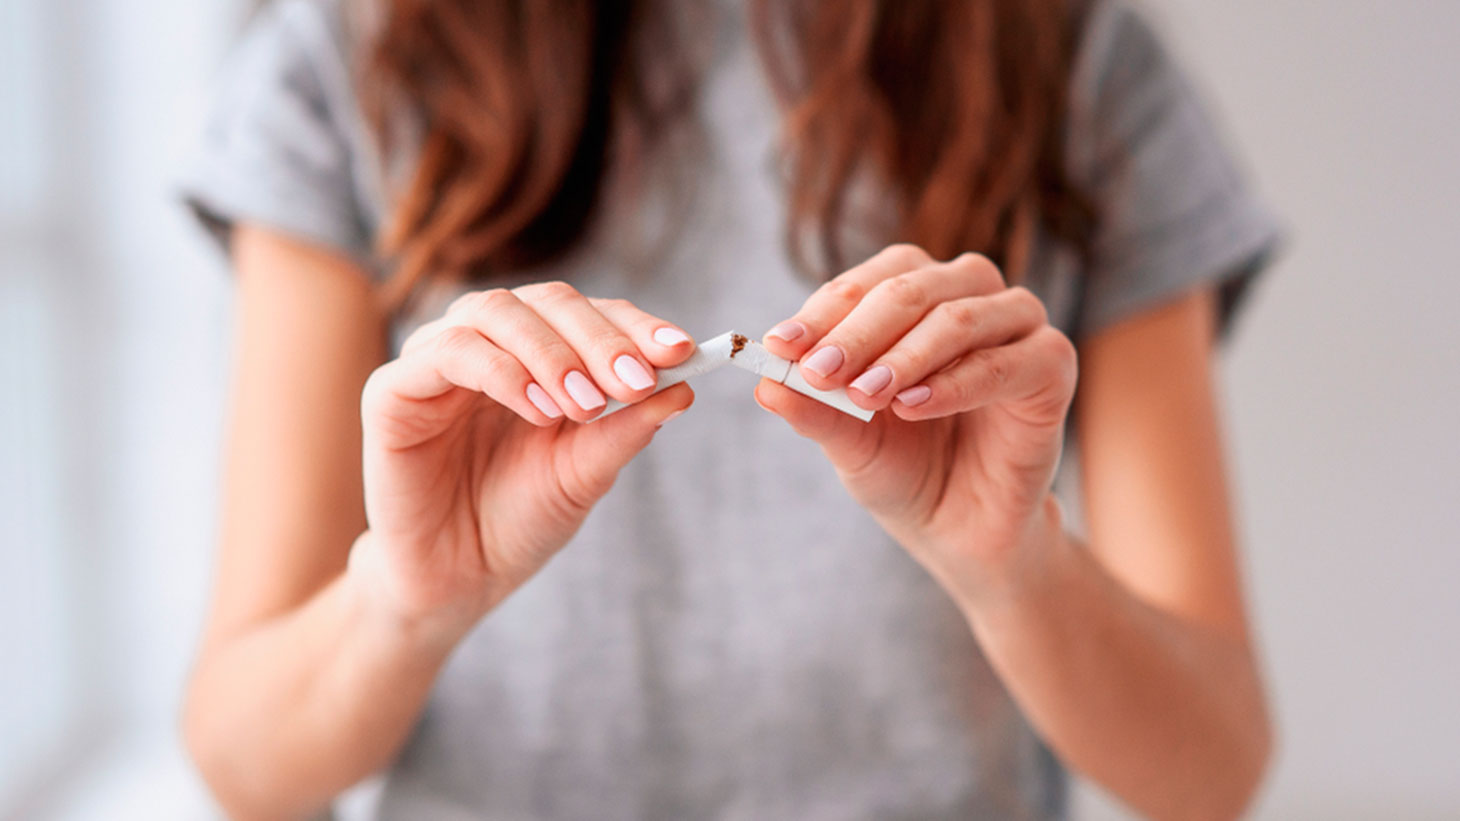 Parar de fumar: dicas para deixar o vício e viver melhor